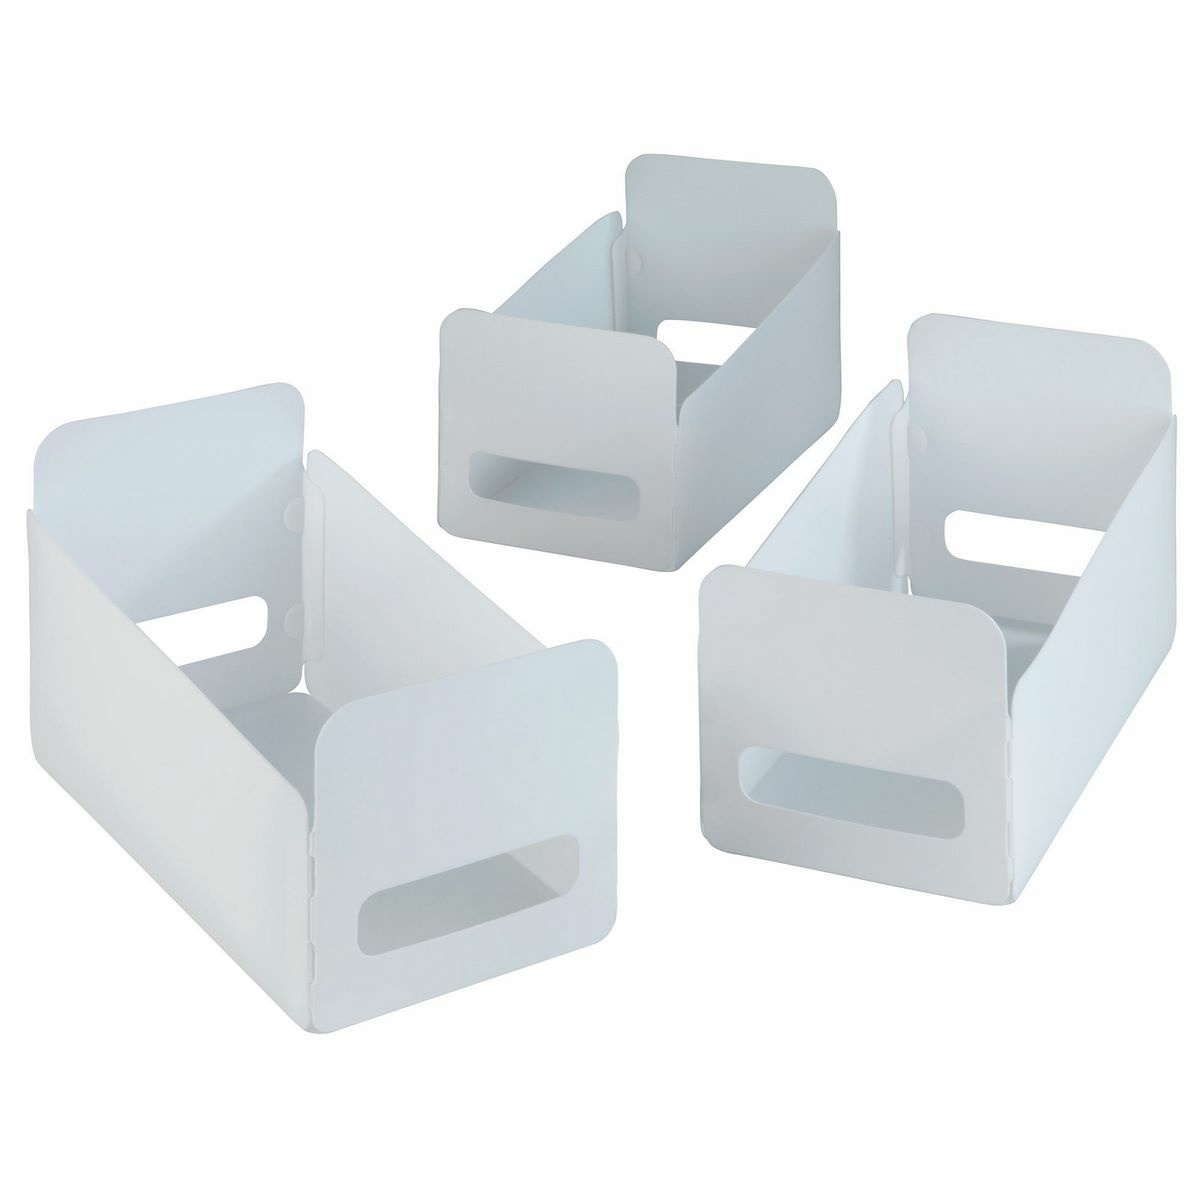 3 összecsukható doboz készlet, Wenko, összecsukható, 15 x 18 x 40 cm, polipropilén, fehér